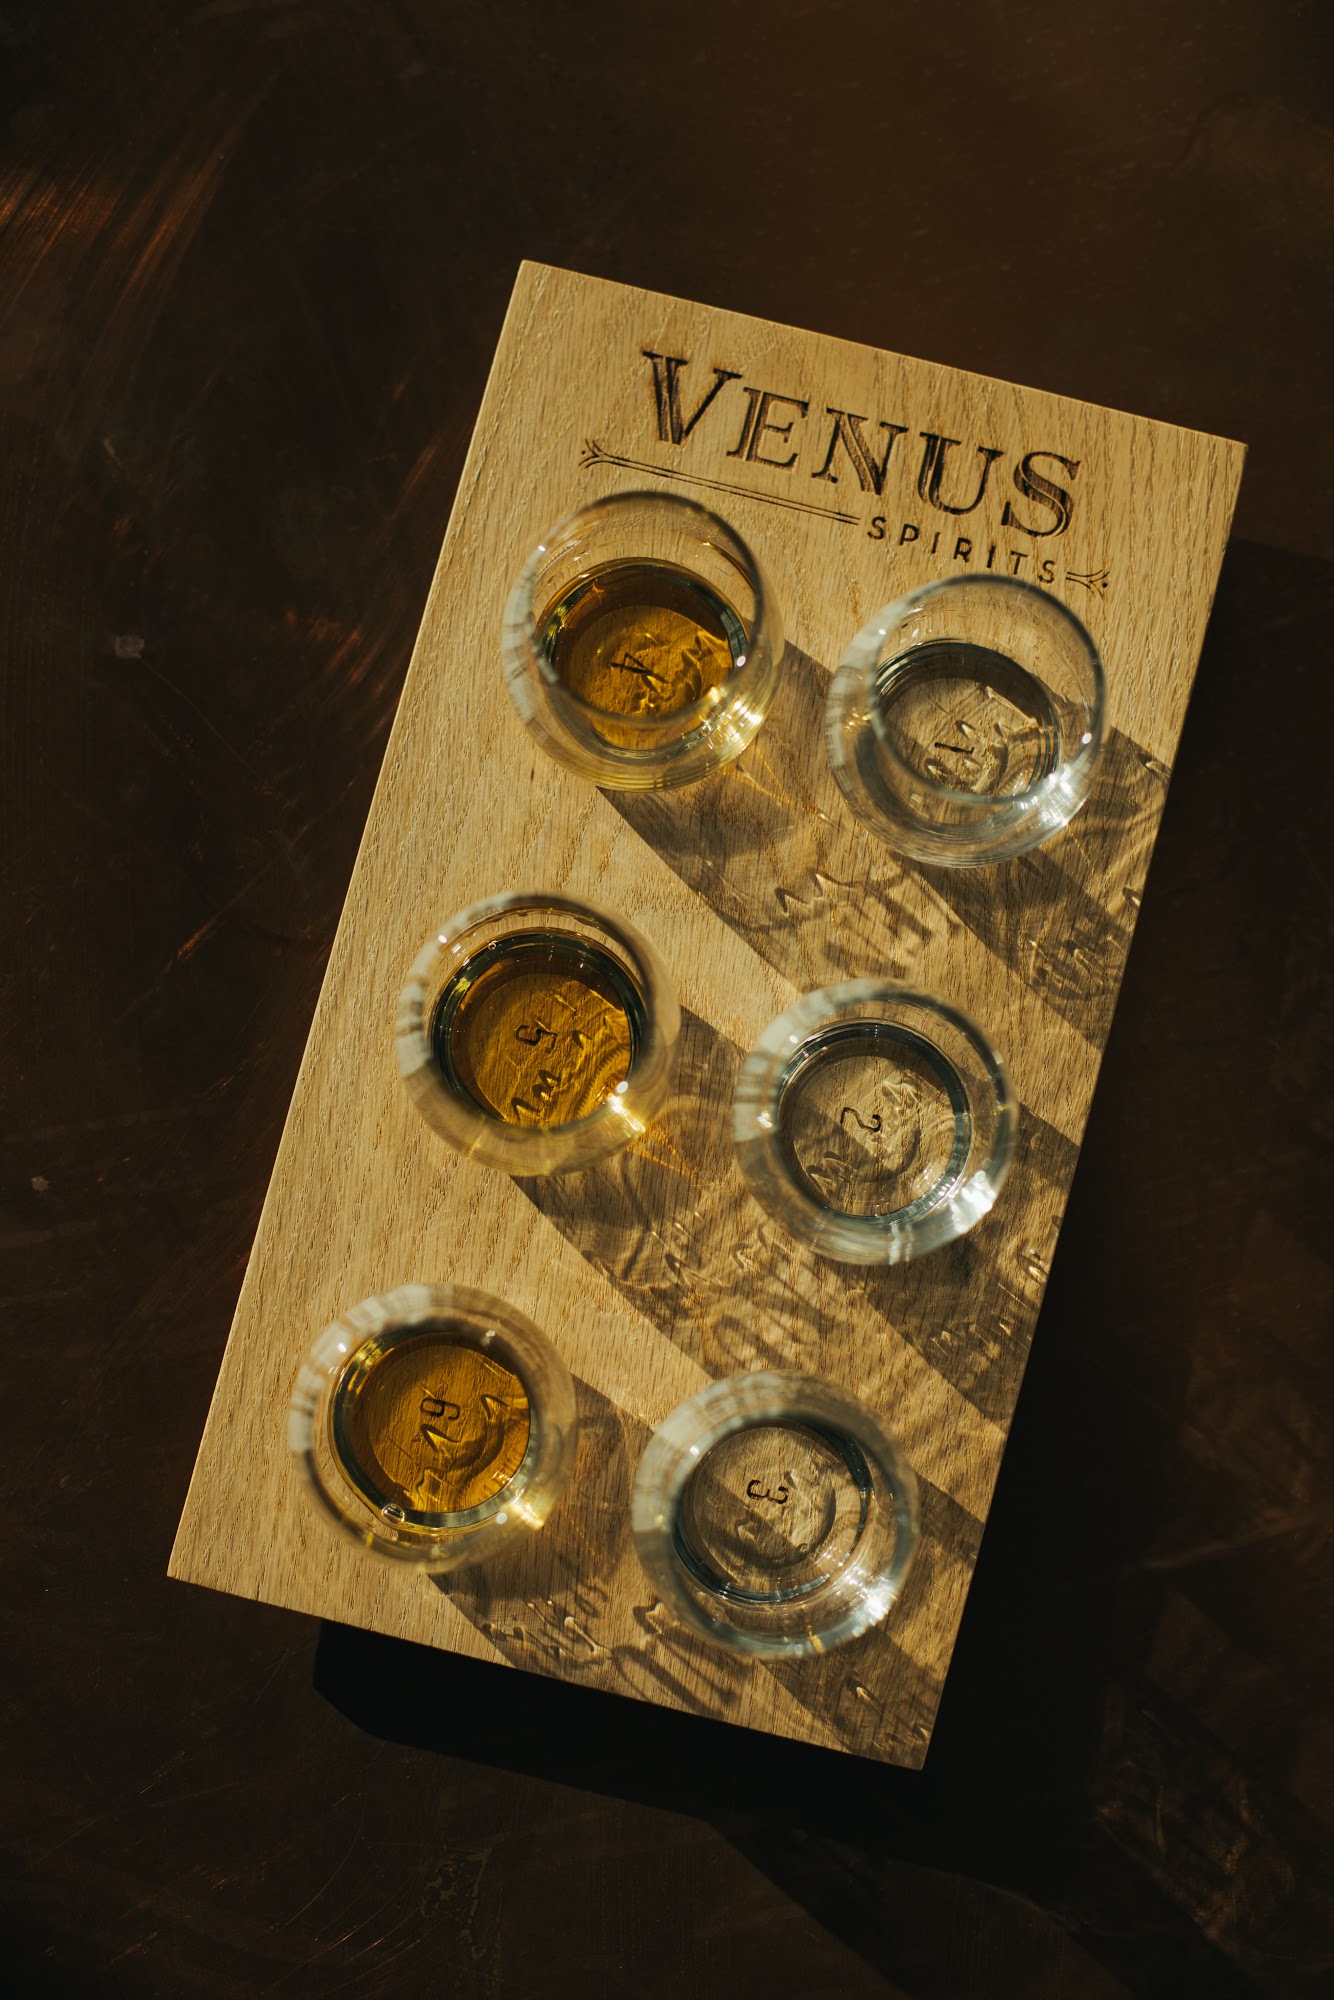 Venus Spirits Tasting Room